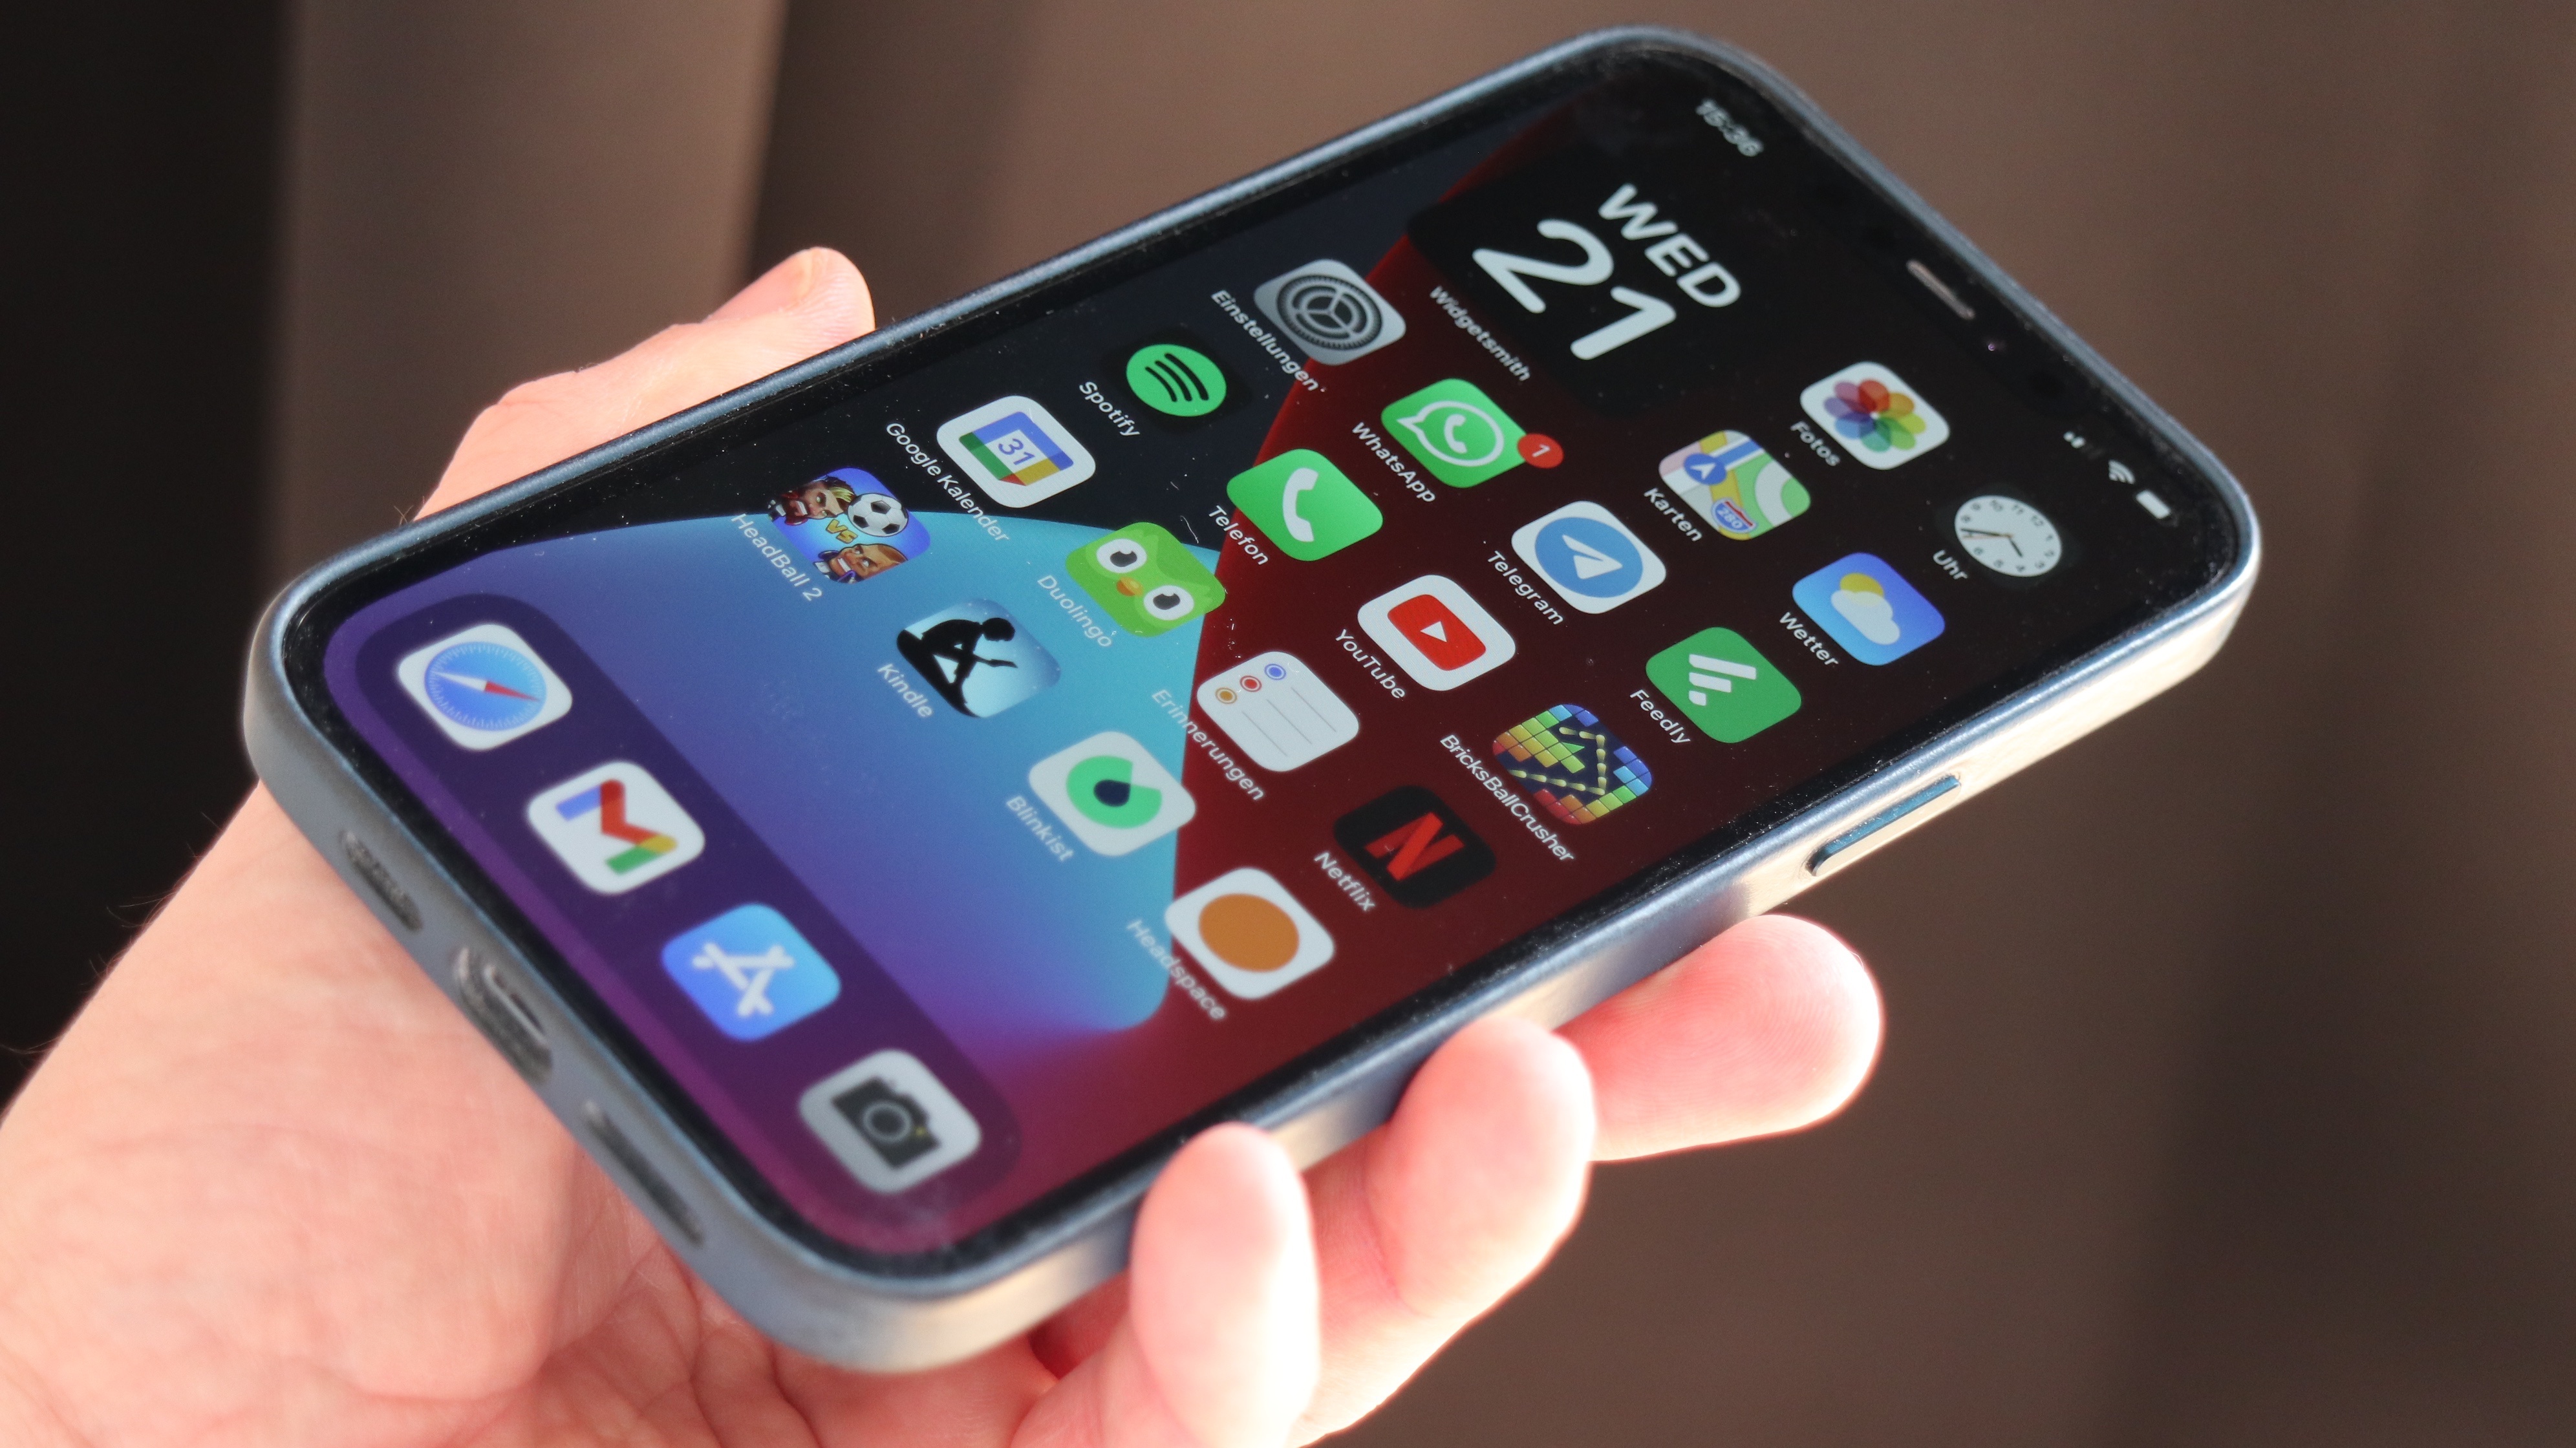 Langzeit-Test des iPhone 13 Pro Max: Das beste iPhone aller Zeiten